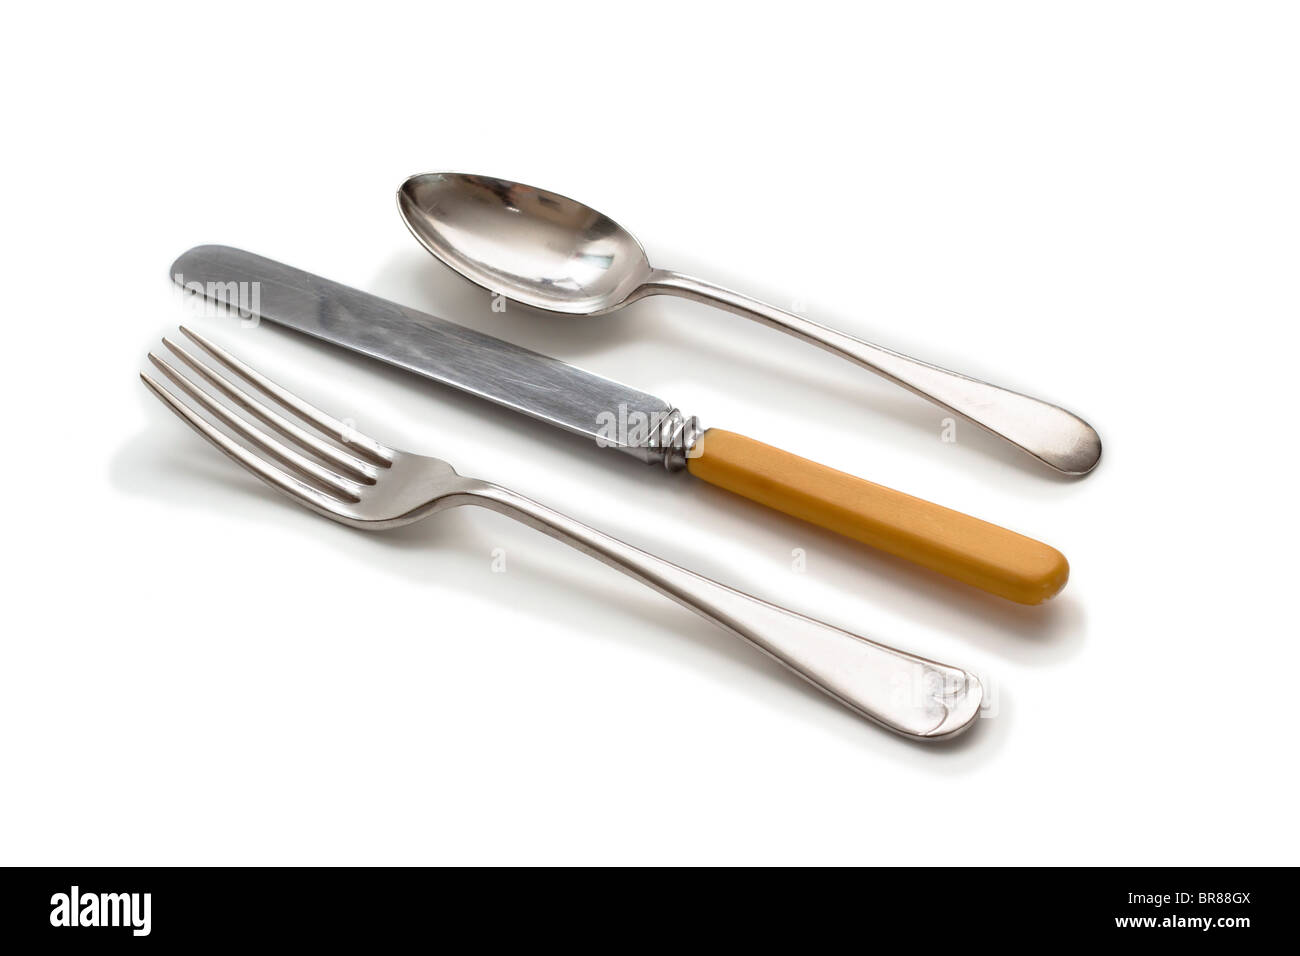 Cuchillo, tenedor y cuchara. Placa de plata antigua con marfil manejado cuchillo, Foto de stock